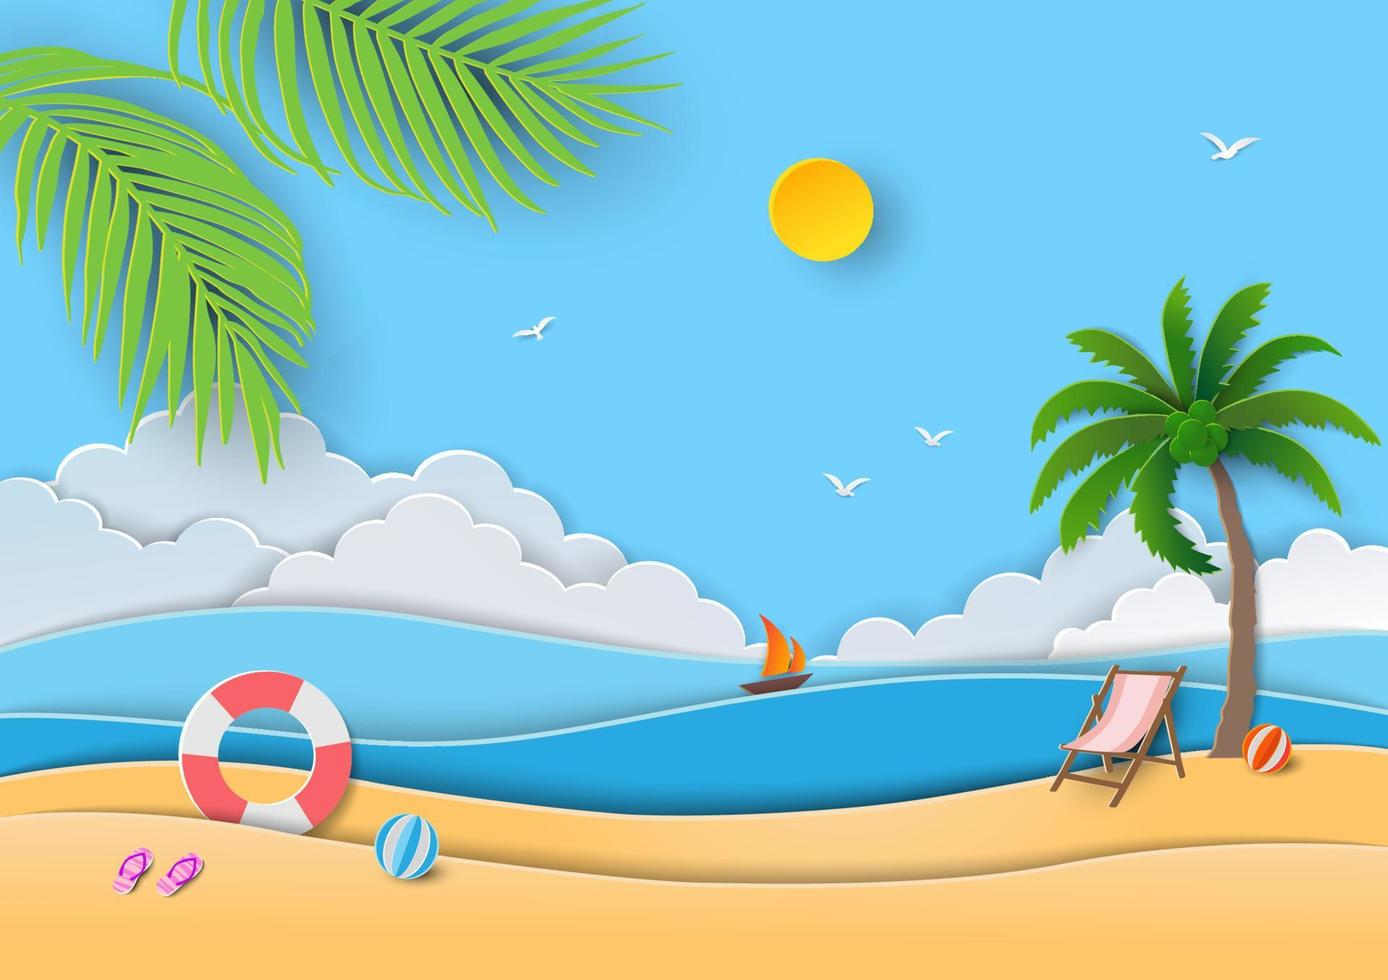 détente estivale avec vue sur la mer bleue, le sable, le soleil, l'anneau de bain, les sandales, le ballon de plage et le cocotier sur papier découpé et style artisanal vecteur